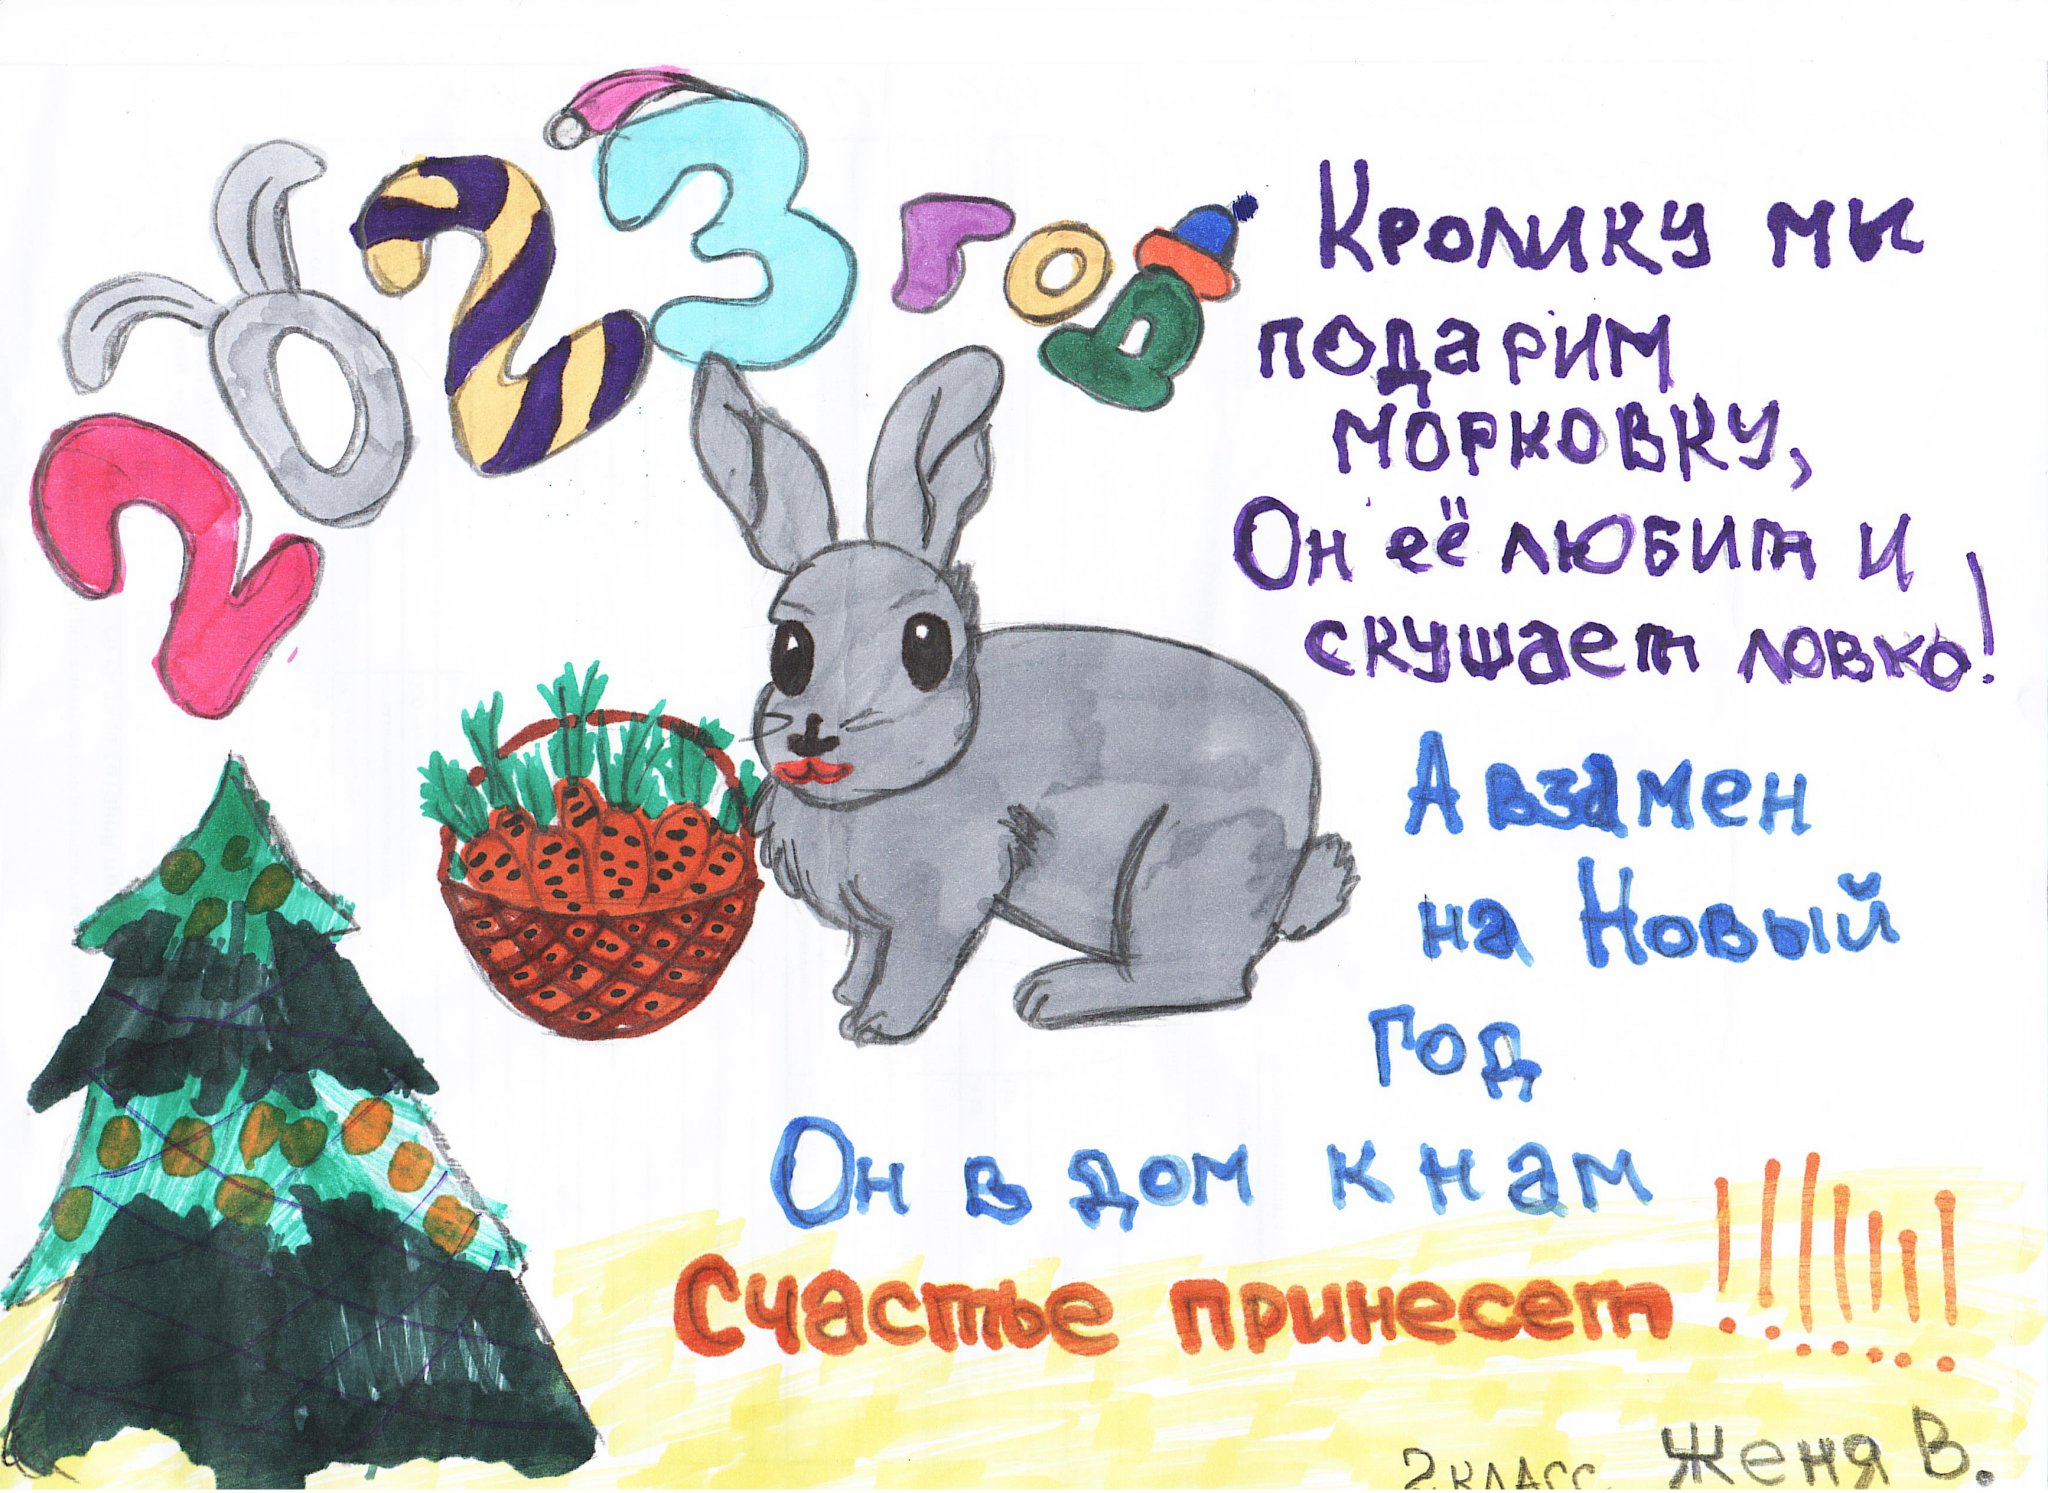 Год кролика человек. Год кролика. Плакат к новому году год кролика. Плакат на НГ С кроликом. Плакат к НГ кролика рисунок.